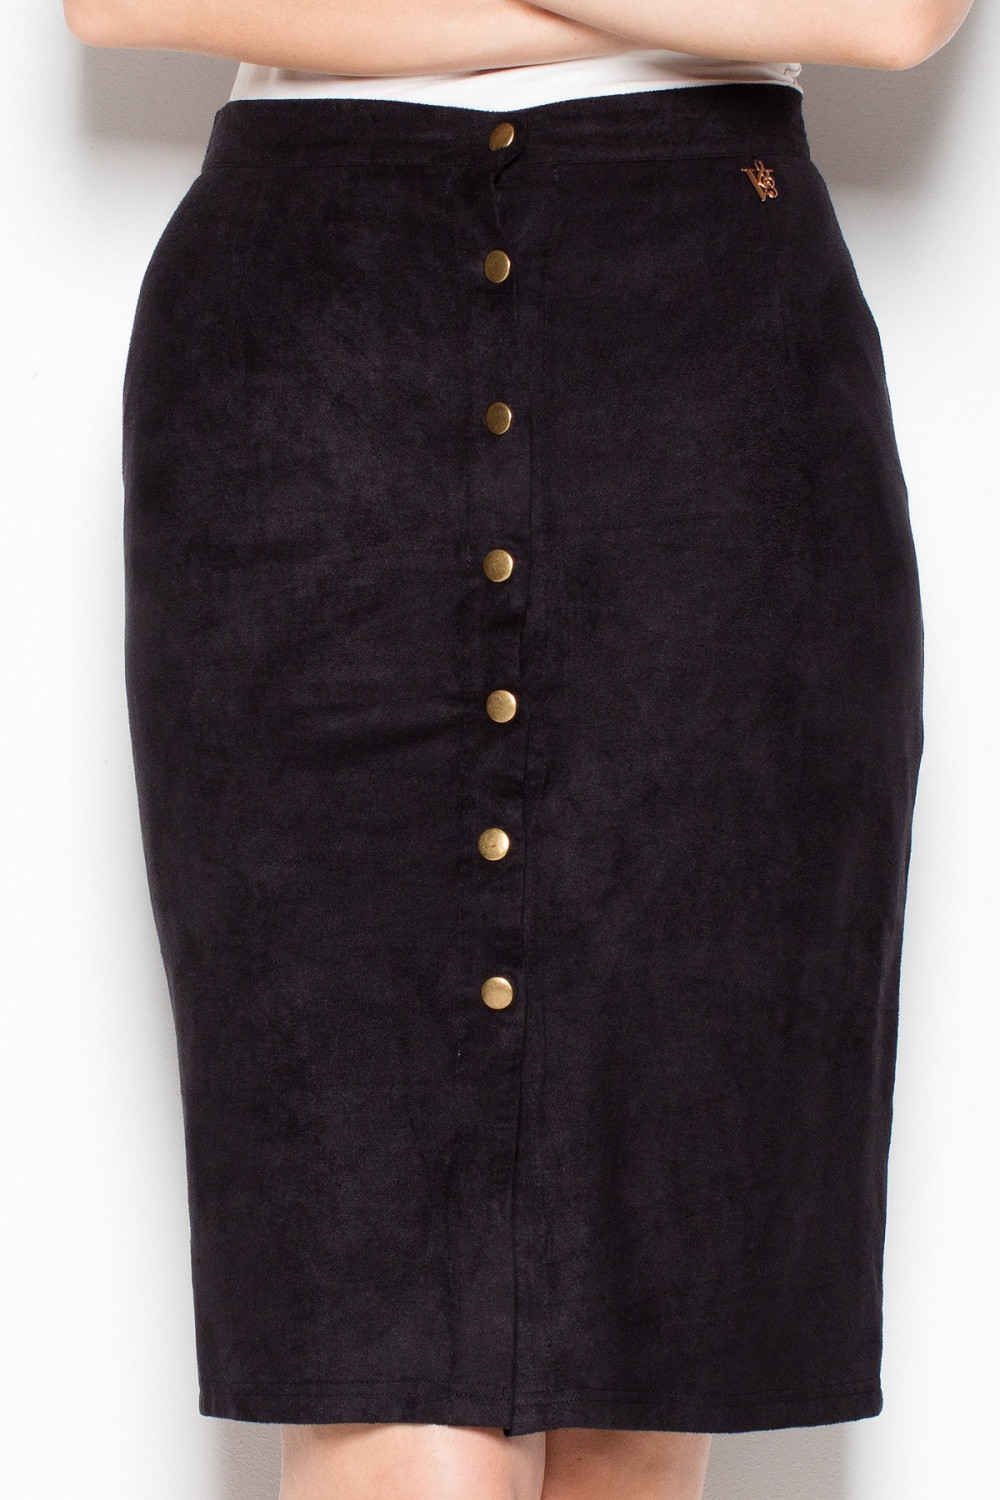 Dámská sukně VT049 černá - Venaton XL